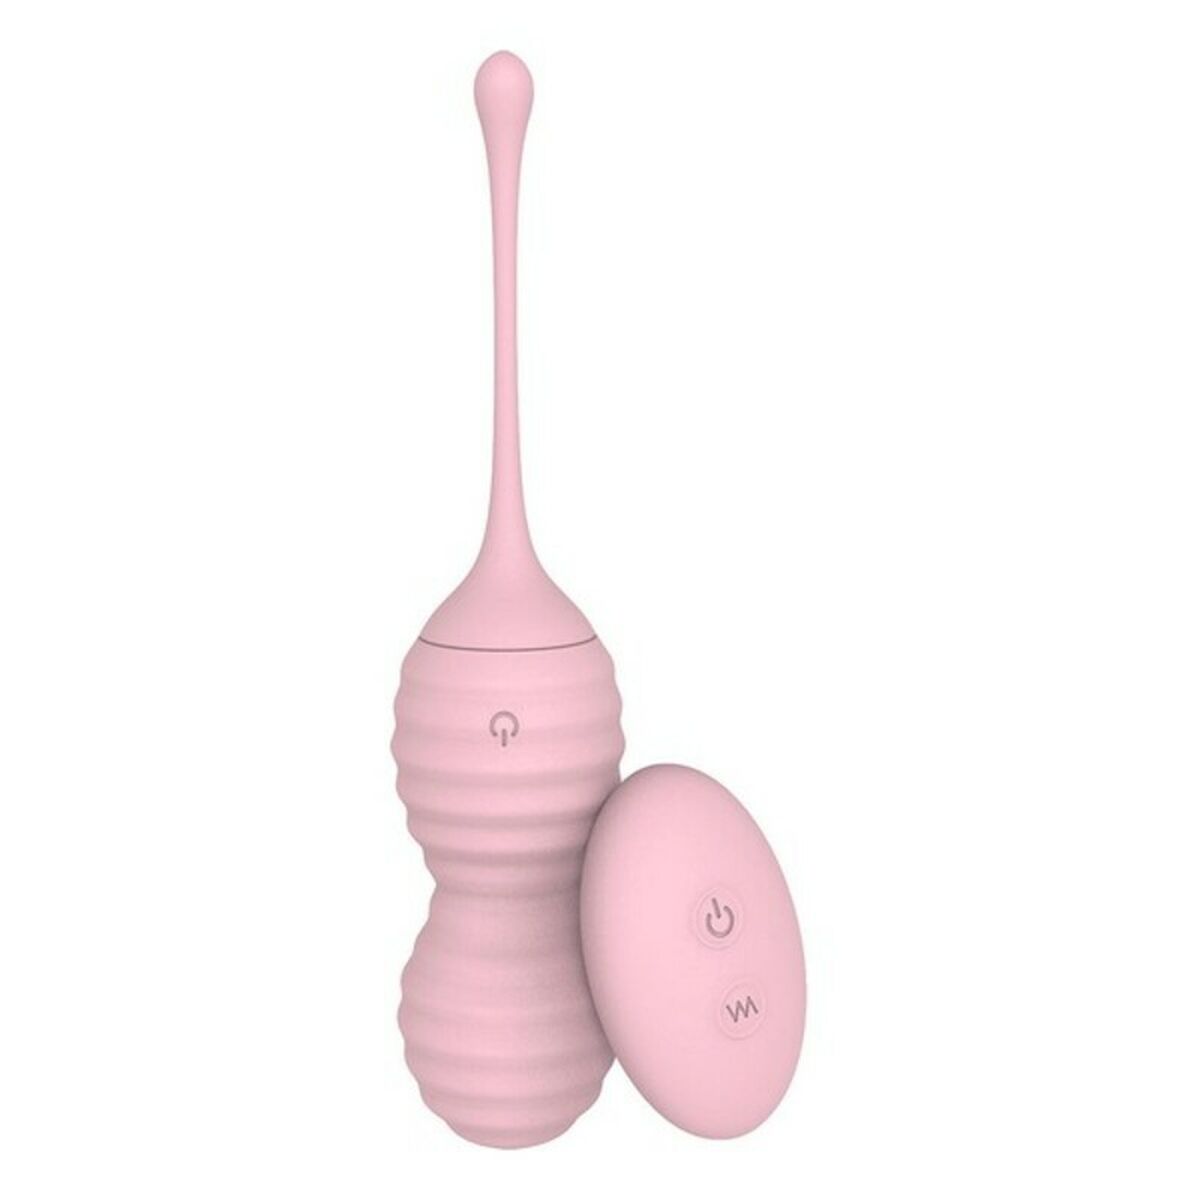 Osta tuote Orgasmipallot S Pleasures Monsoon Pinkki verkkokaupastamme Korhone: Seksikauppa & Erotiikka 20% alennuksella koodilla VIIKONLOPPU